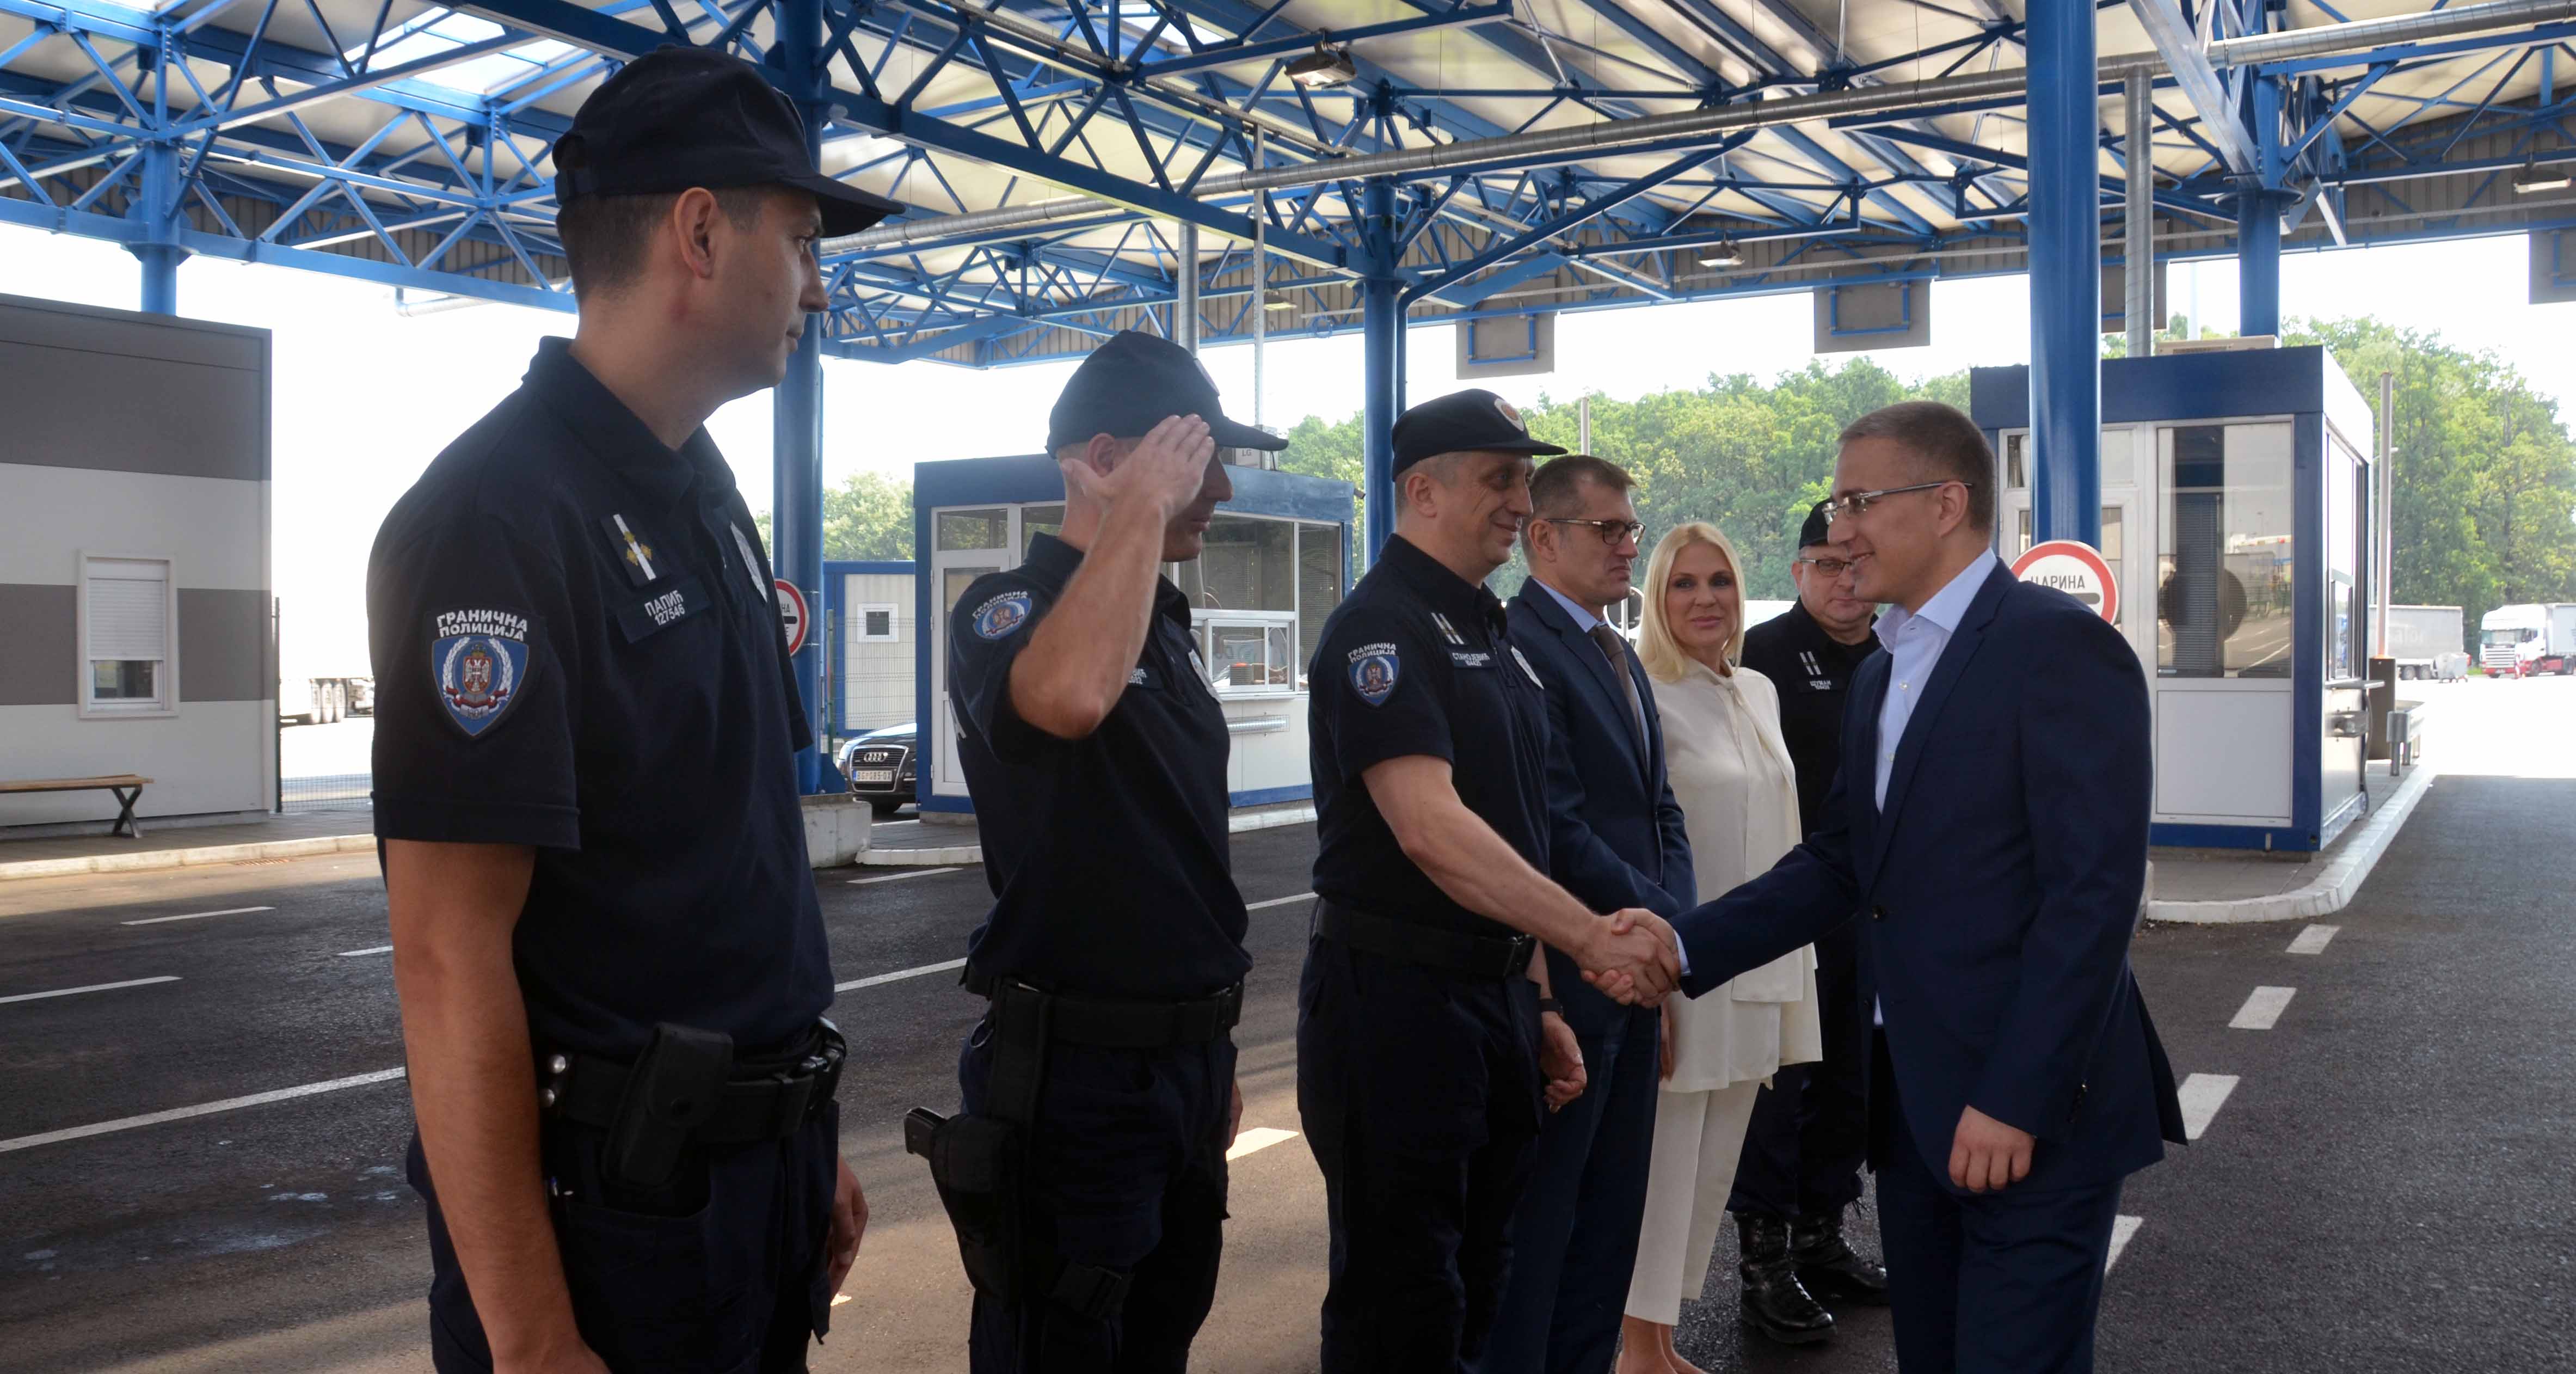 Стефановић: Гранична полиција ради неуморно како би заштитила безбедност грађана и омогућила ефикаснији прелаз границе